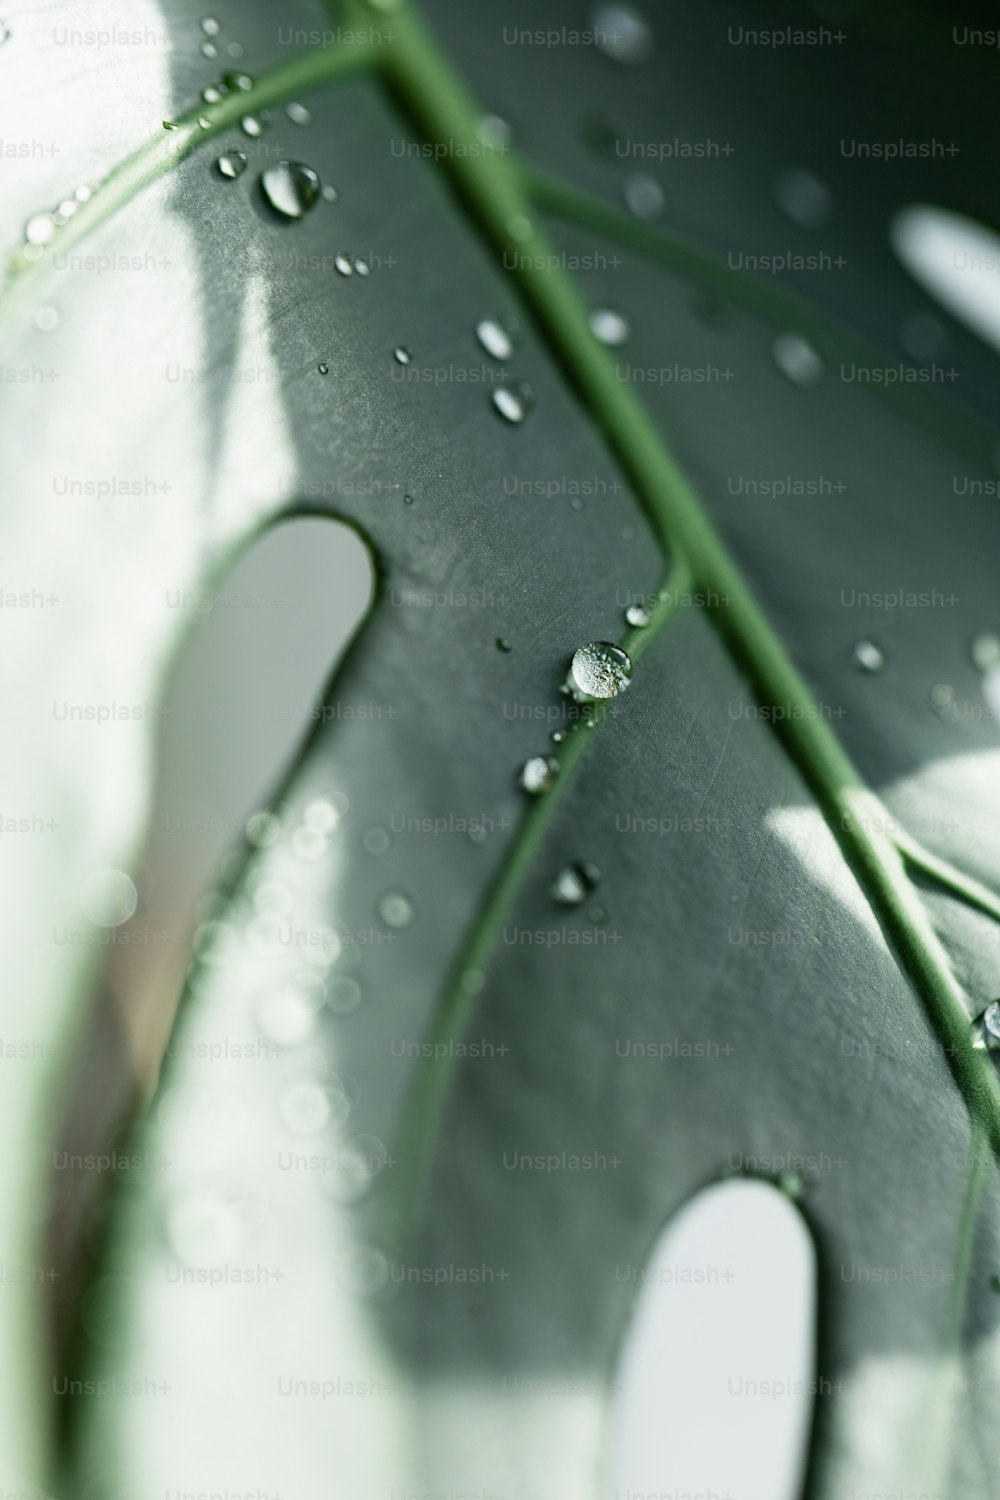 uma folha verde com gotas de água sobre ela